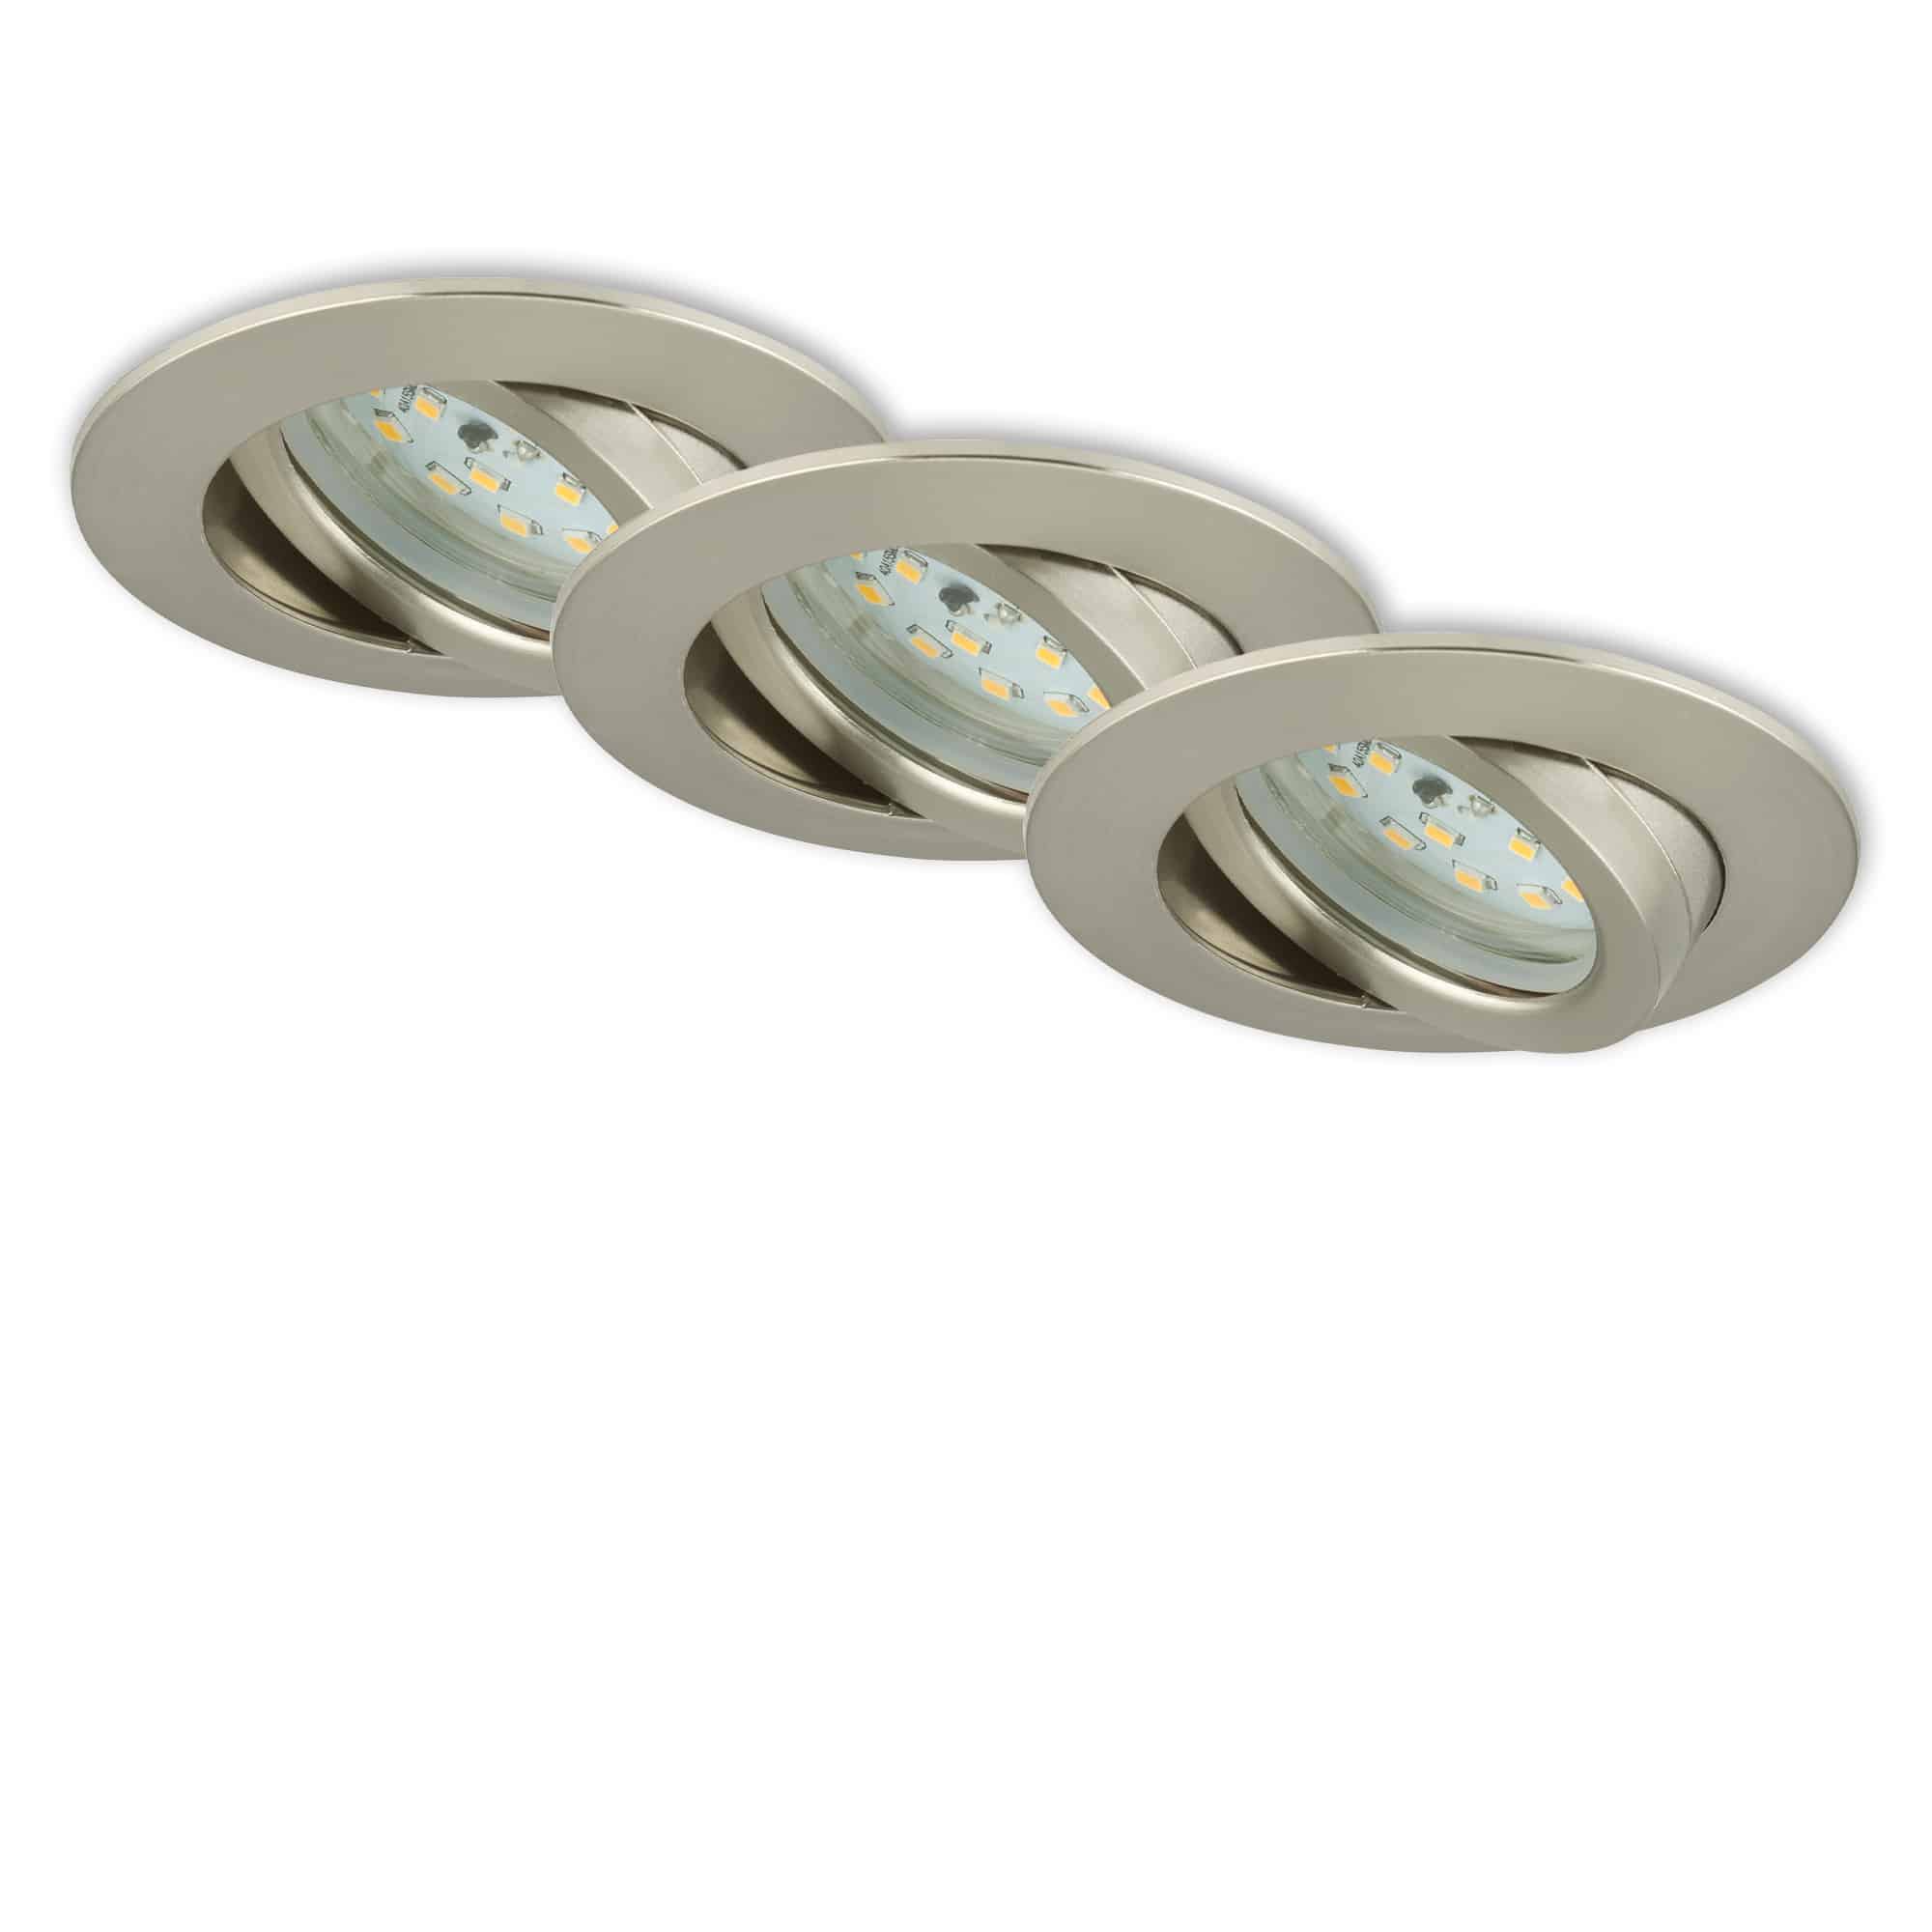 Spots LED encastrables orientables 5W ultra-plats nickel mat Set de 12